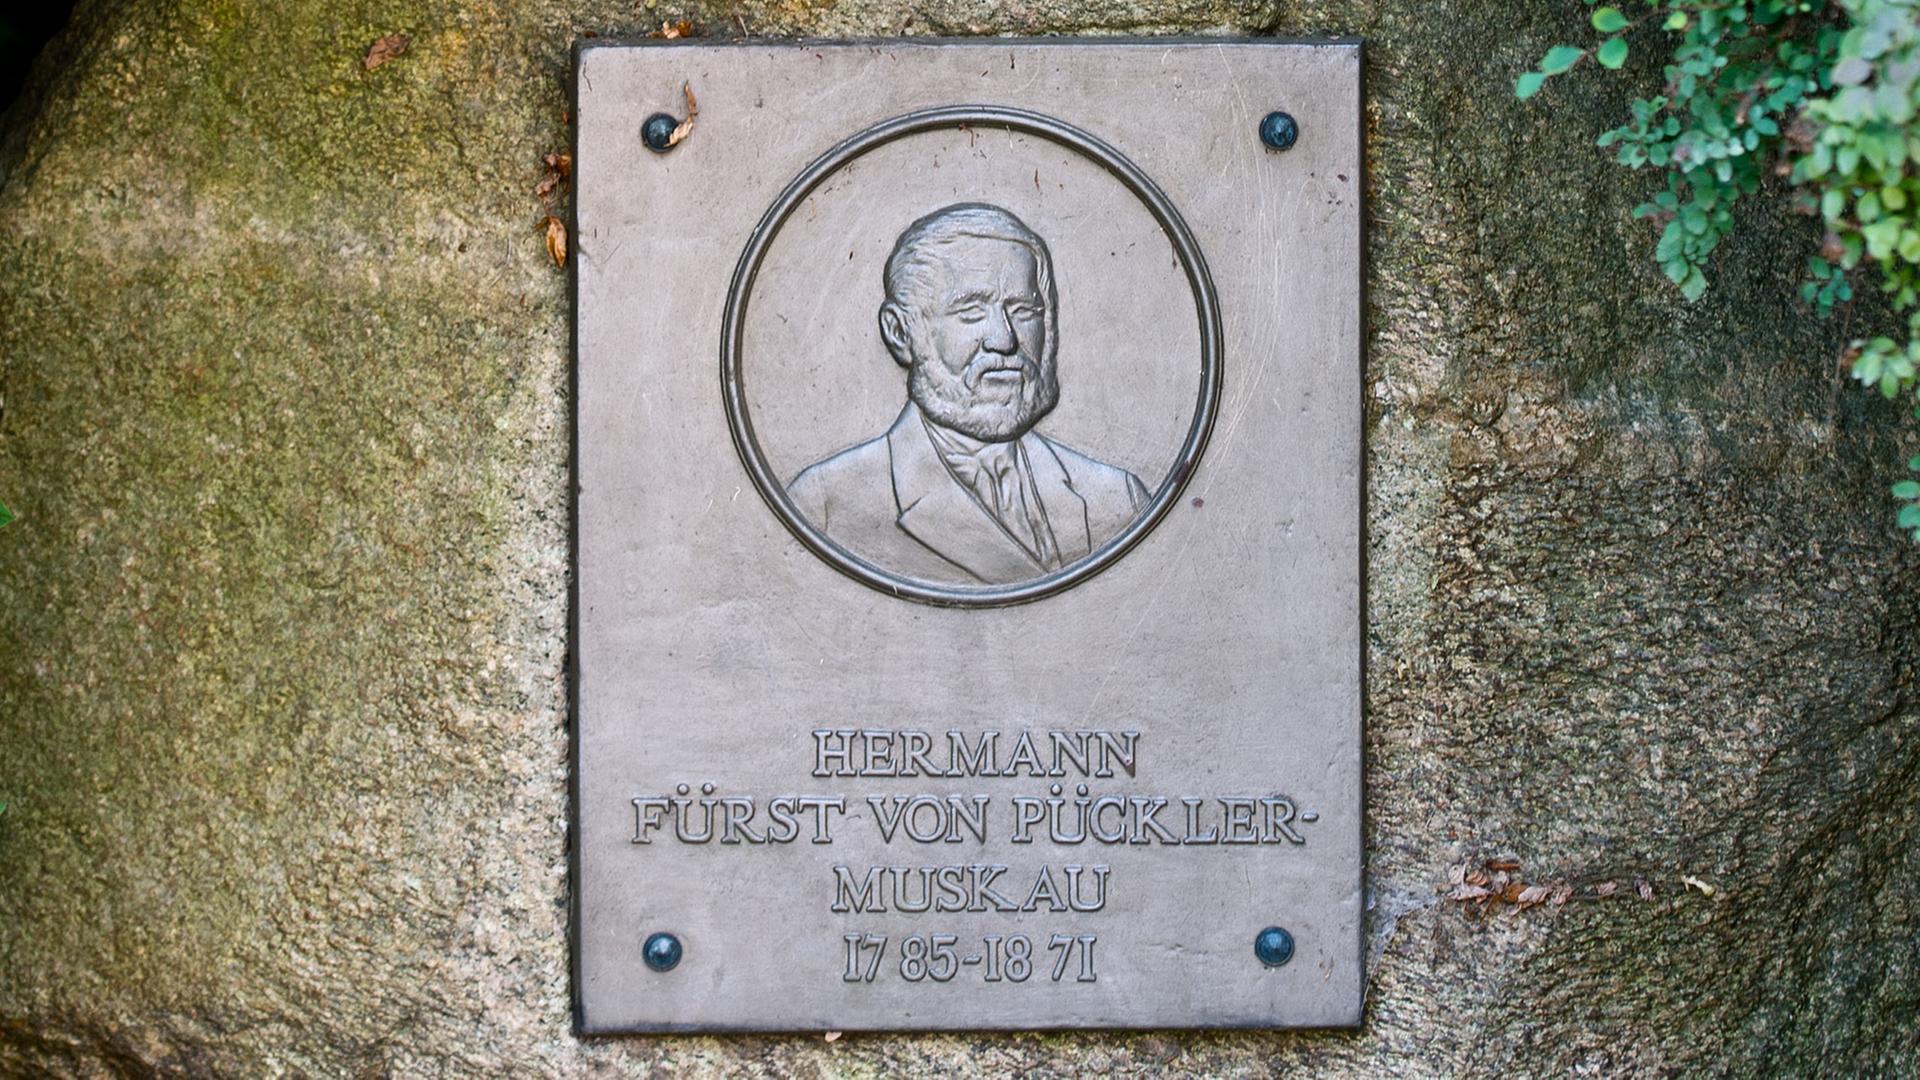 Eine Bronzeplatte erinnert an Hermann Fürst von Pückler-Muskau (1785-1871) nahe dem Neuen Schloss im Muskauer Park, aufgenommen am 29.08.2013 in Bad Muskau.